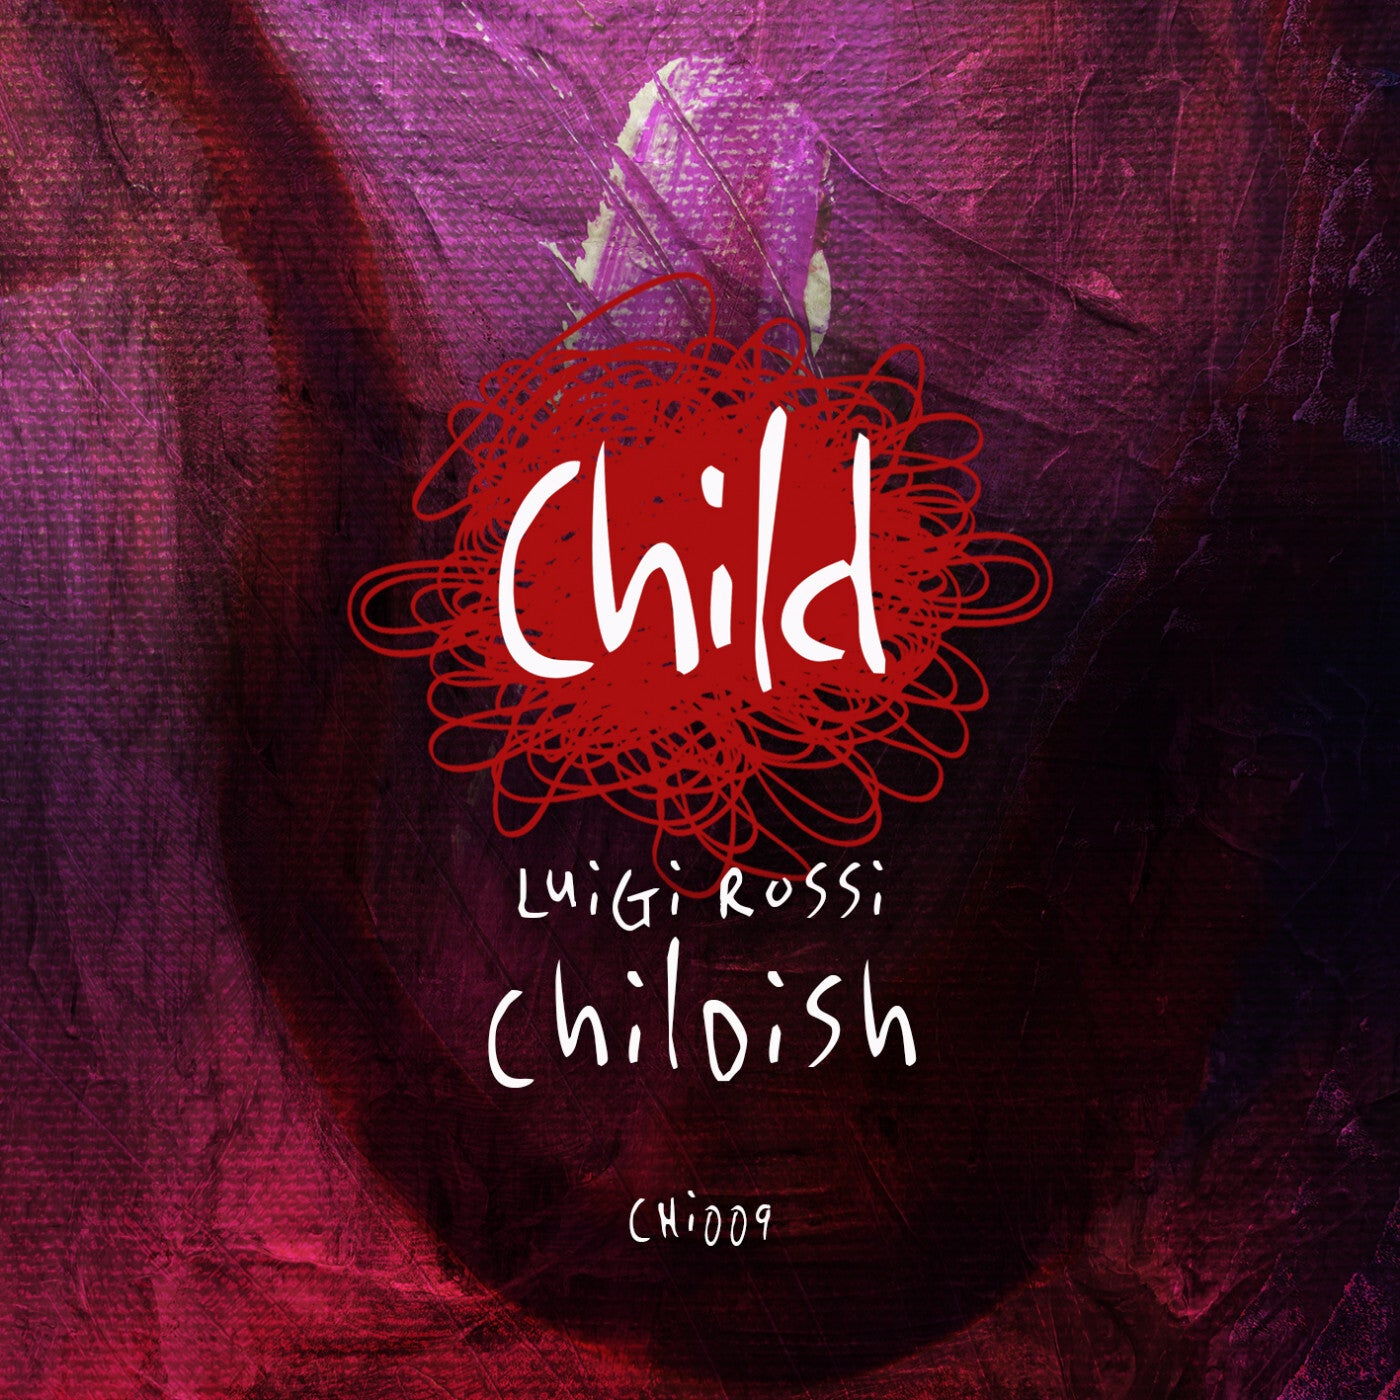 Luigi Rossi – Childish [CHI009]